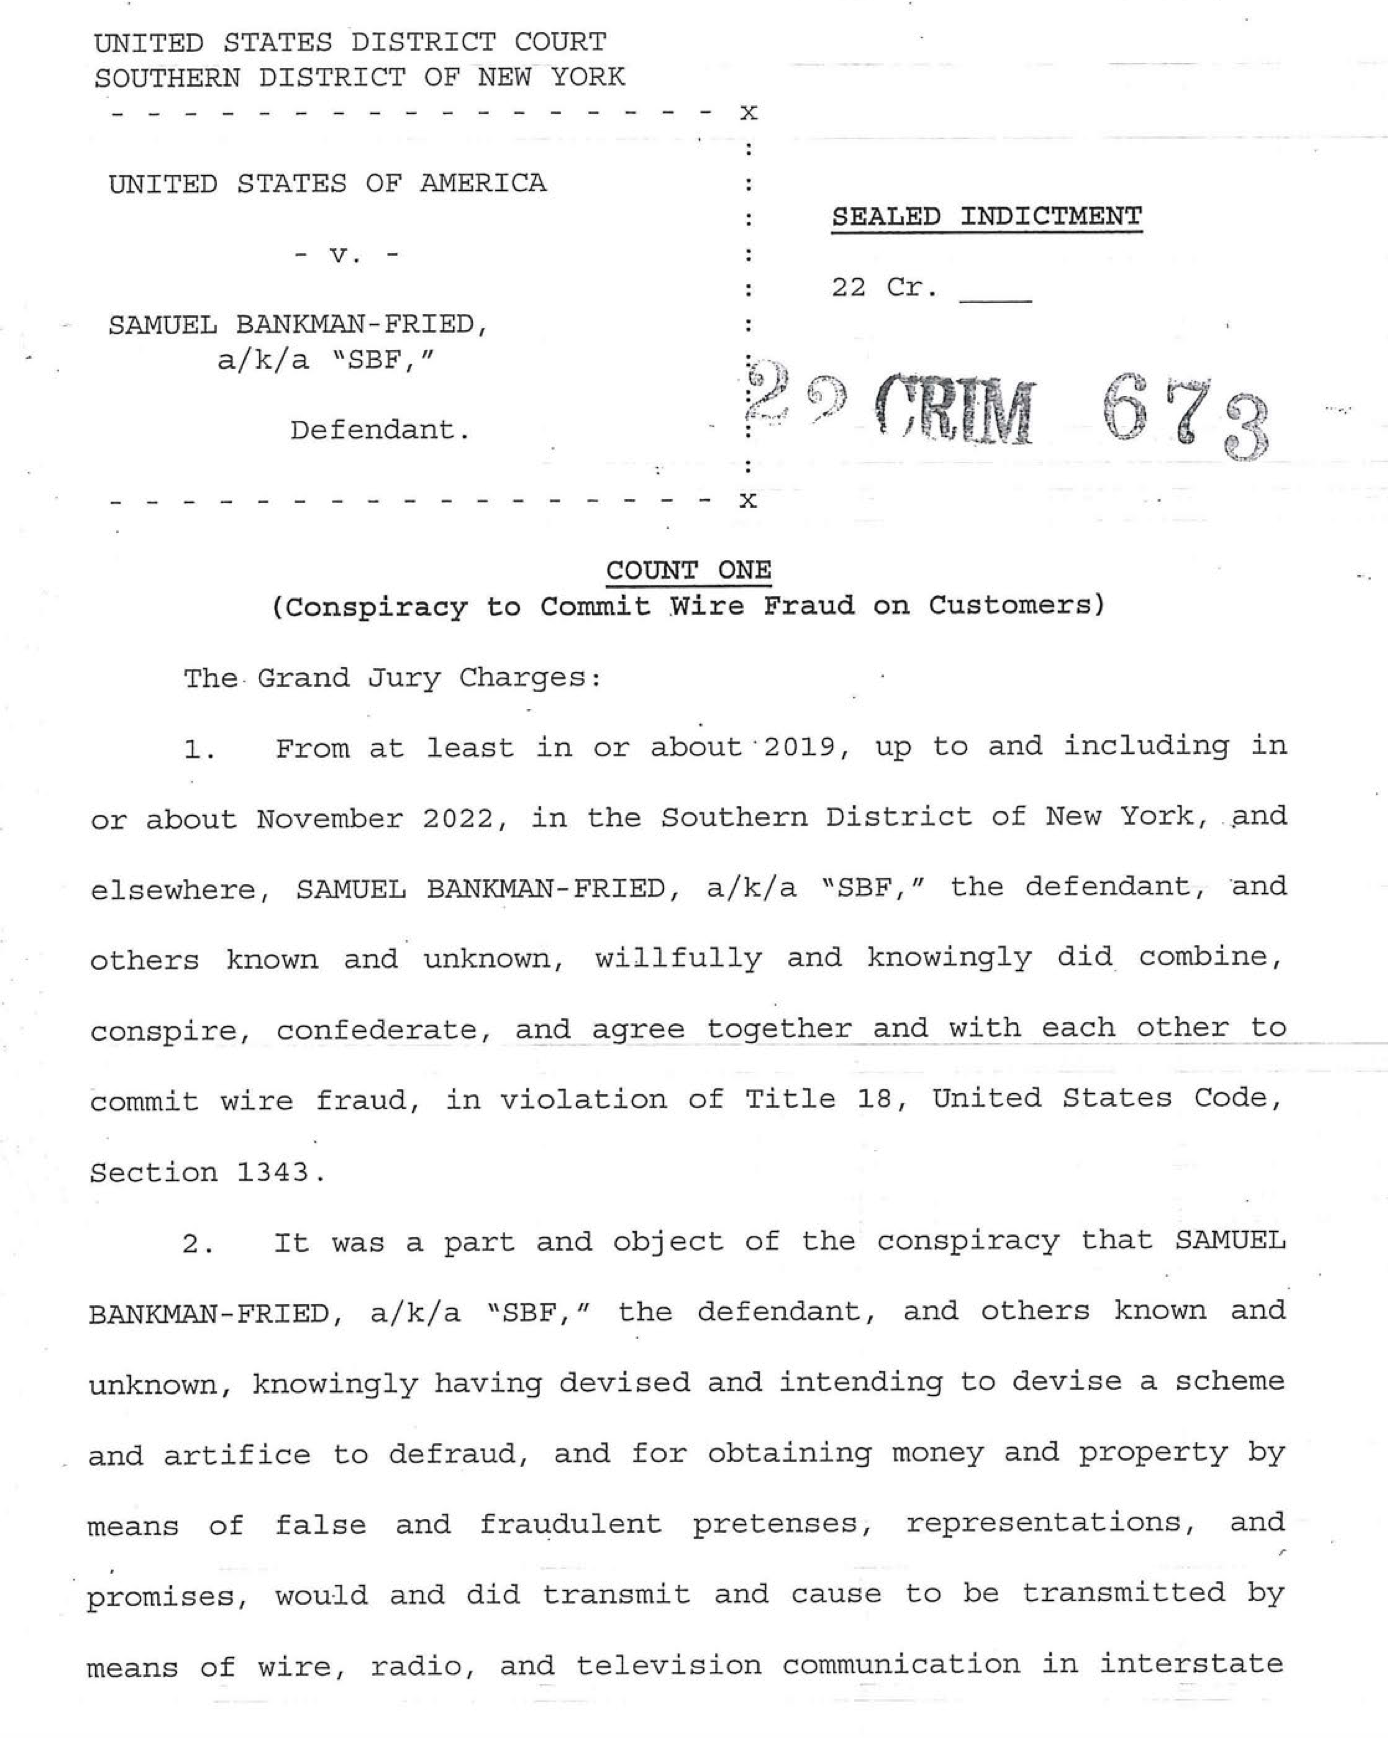 美国对班克曼-弗里德的起诉书首页。图片来自美国司法部纽约南区检察官办公室官网